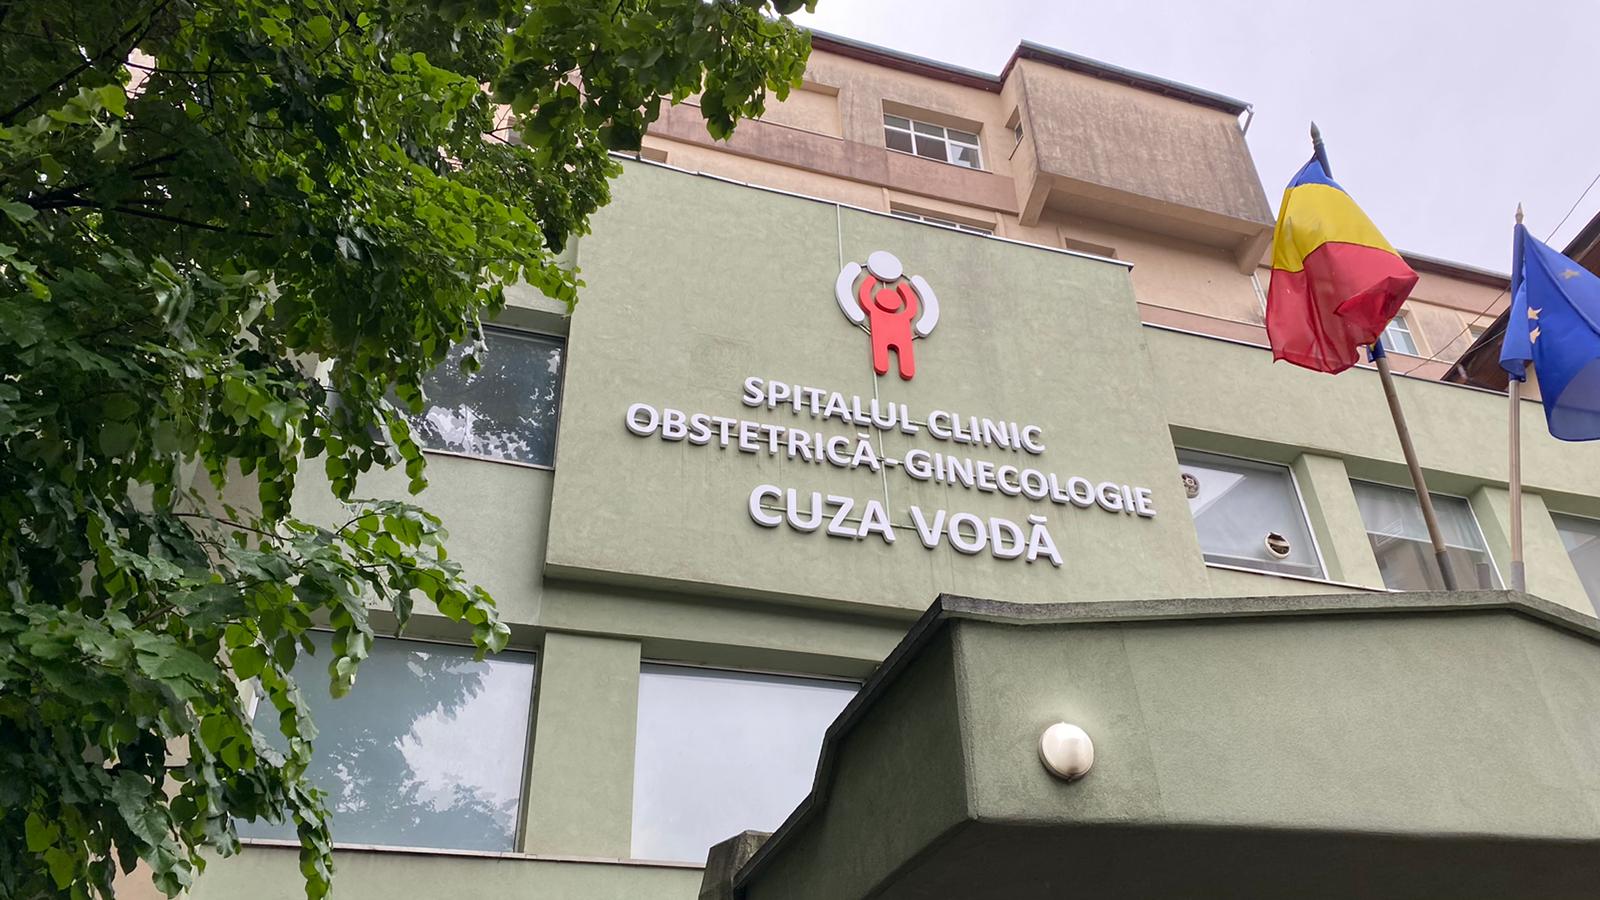  Spitalul Clinic Obstetrică-Ginecologie „Cuza Vodă” Iași